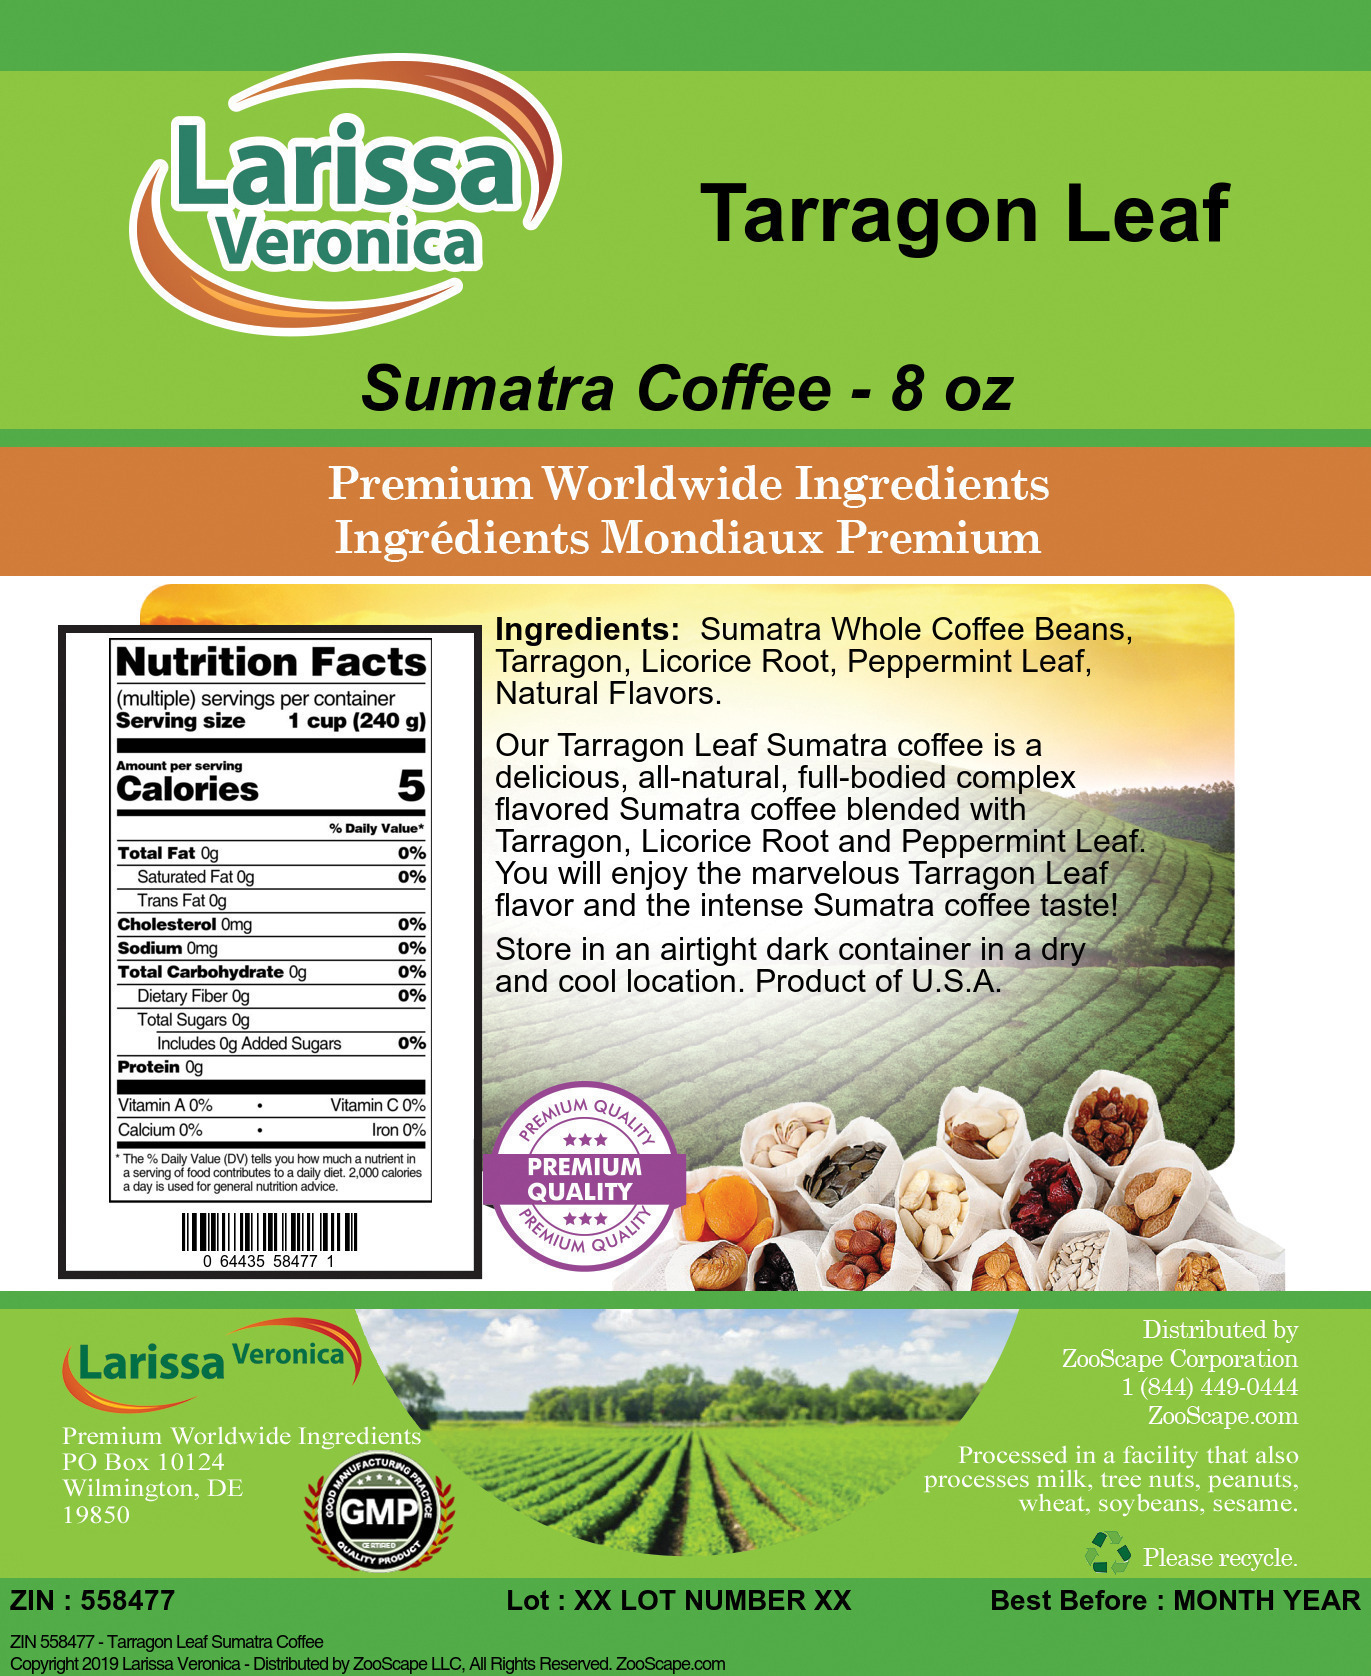 Tarragon Leaf Sumatra Coffee - Label